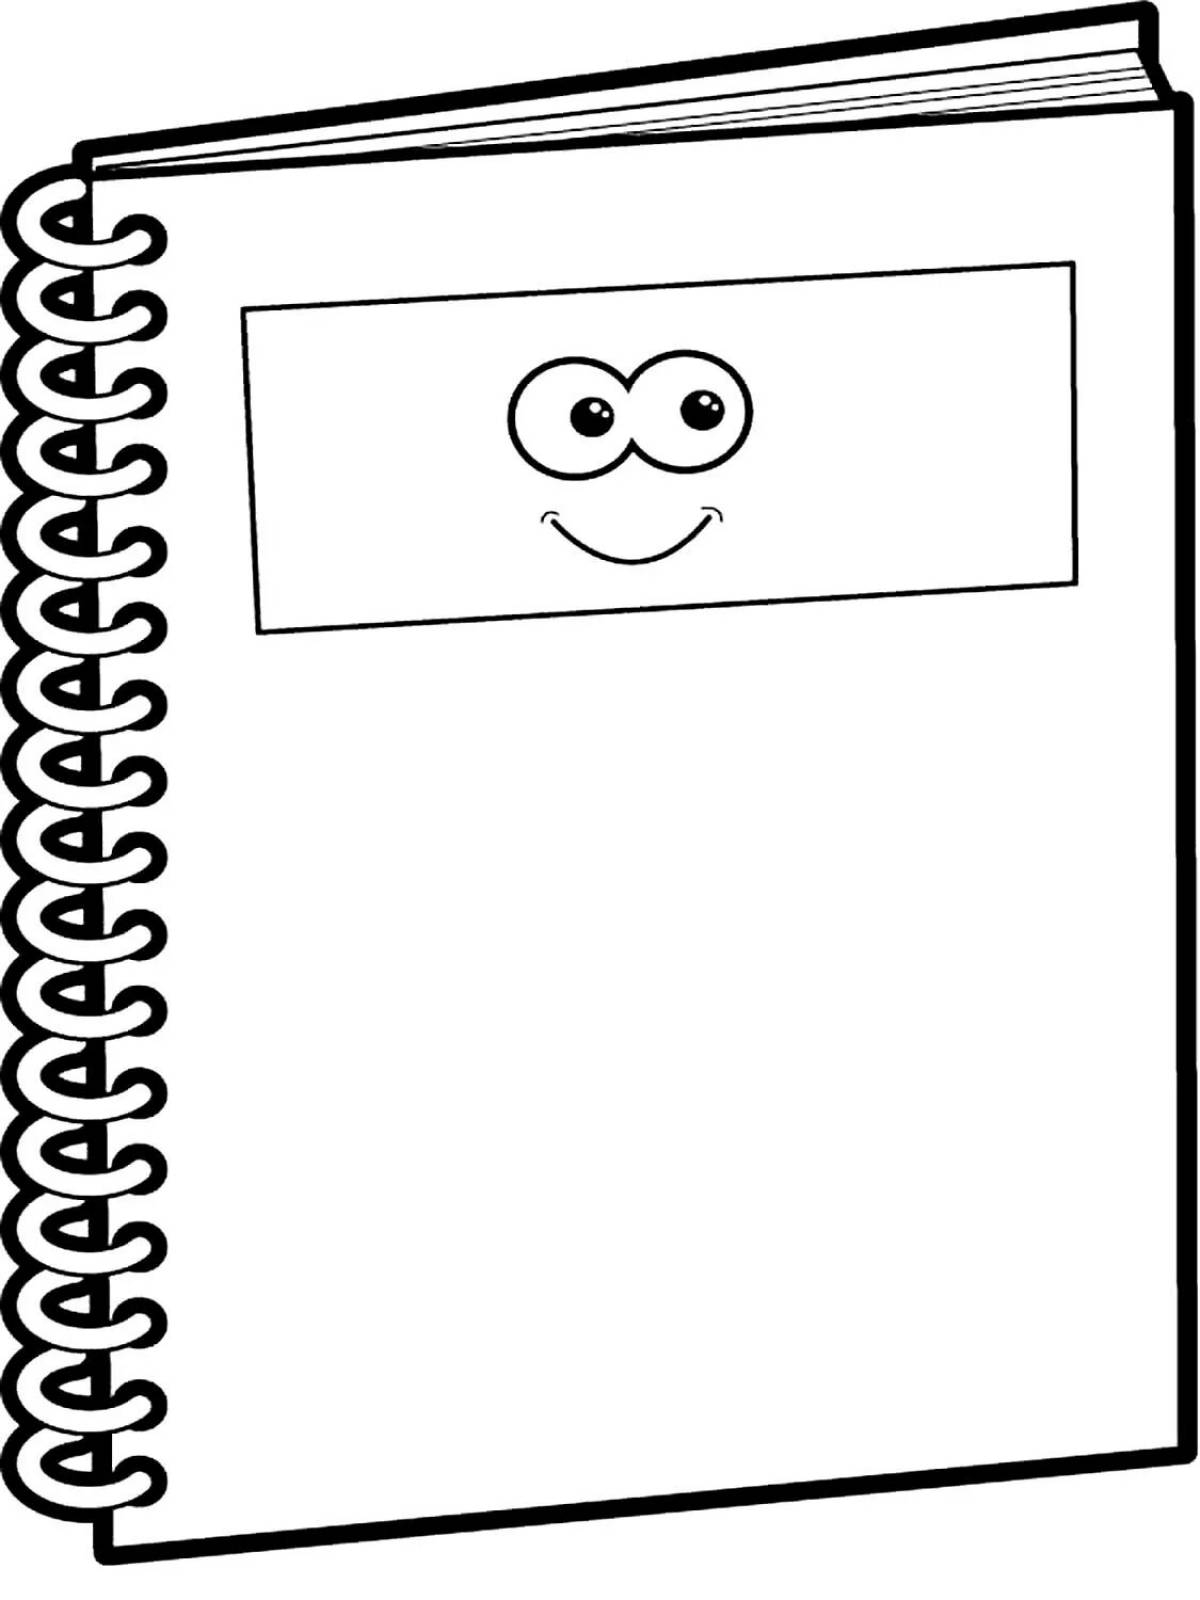 Children's notebook #23